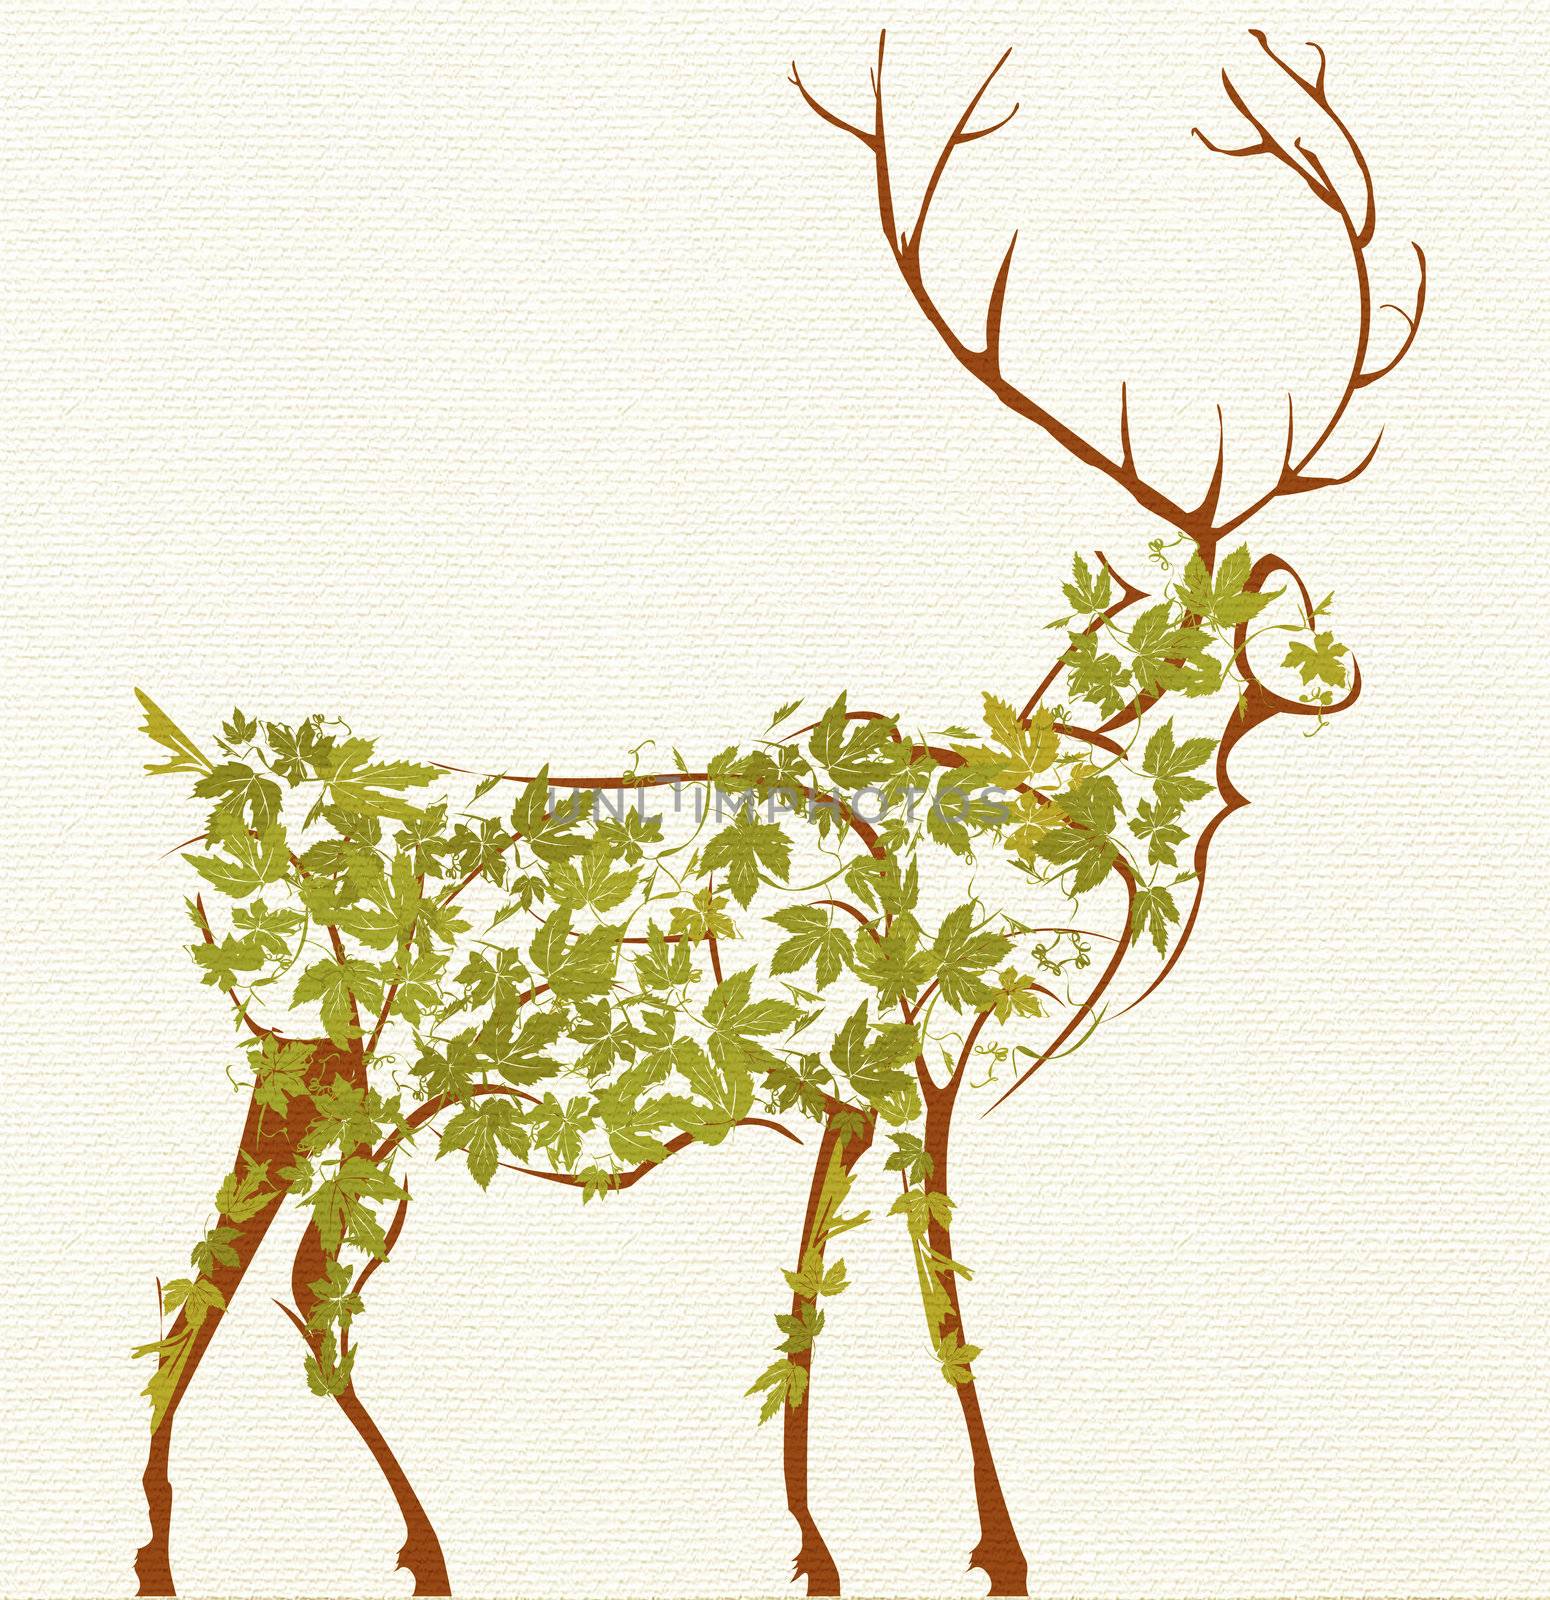 Stylized deer by Lirch